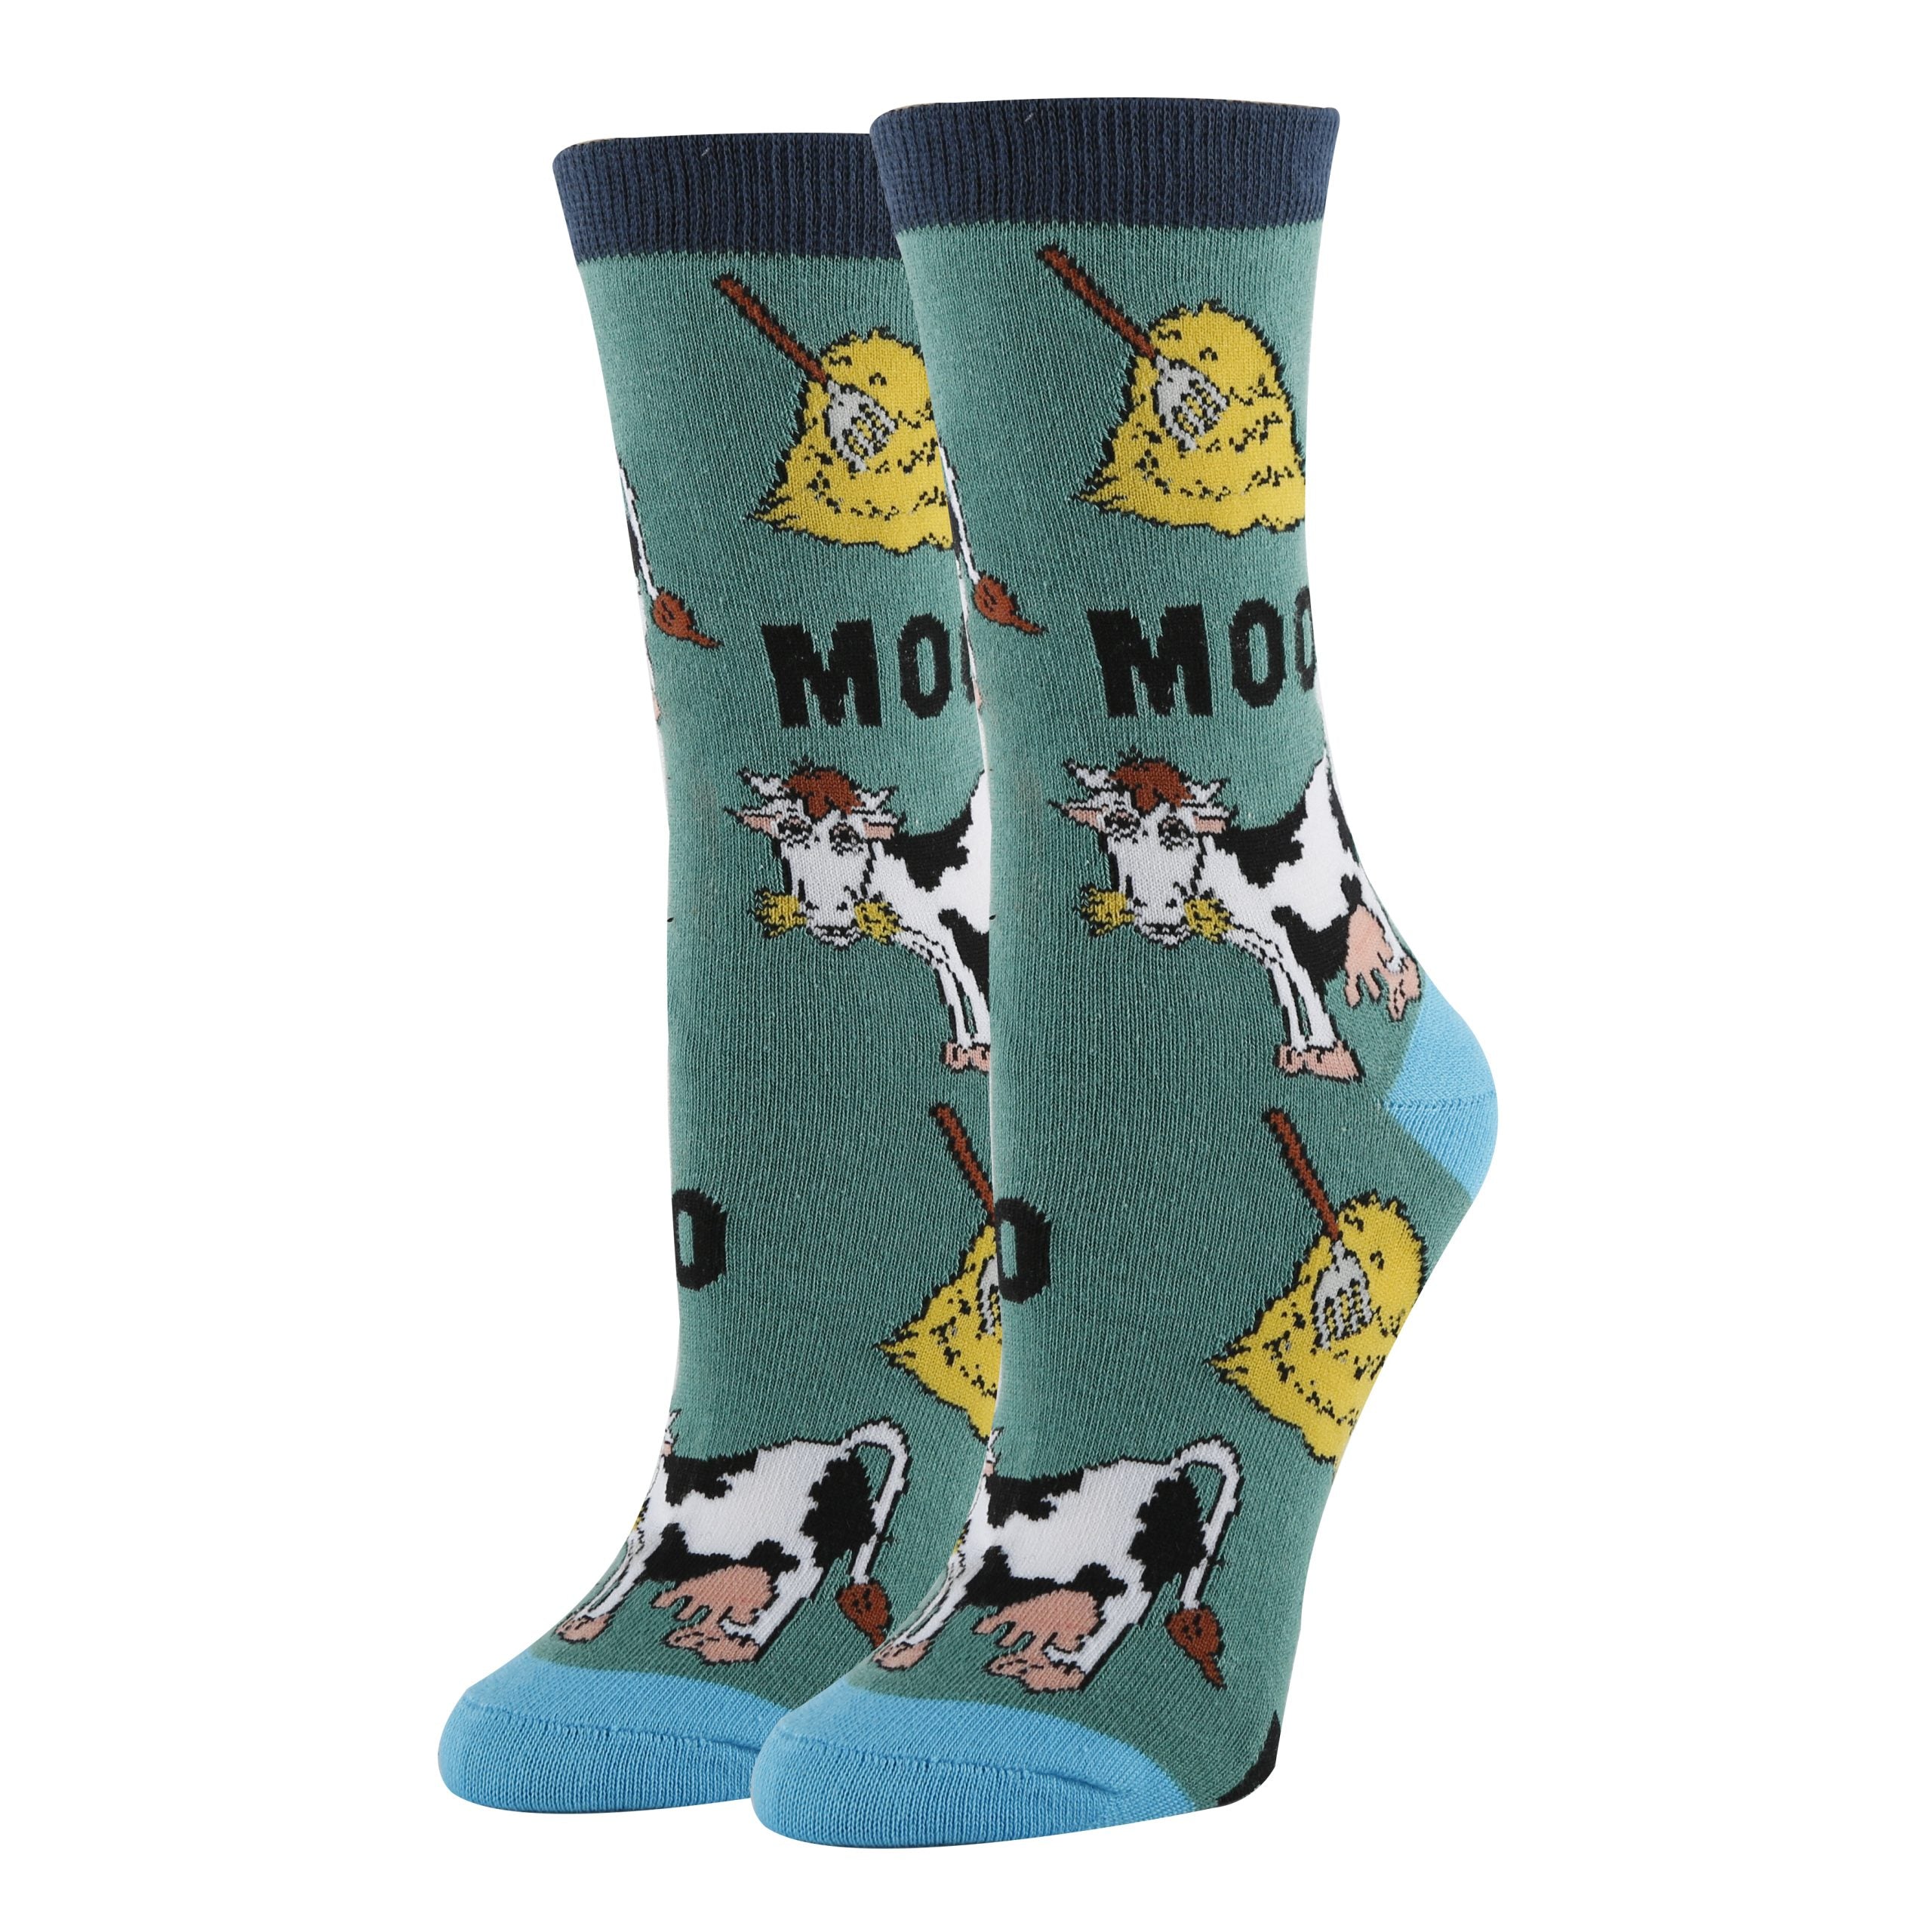 Mooo Socks | Funny Crew Socks for Women